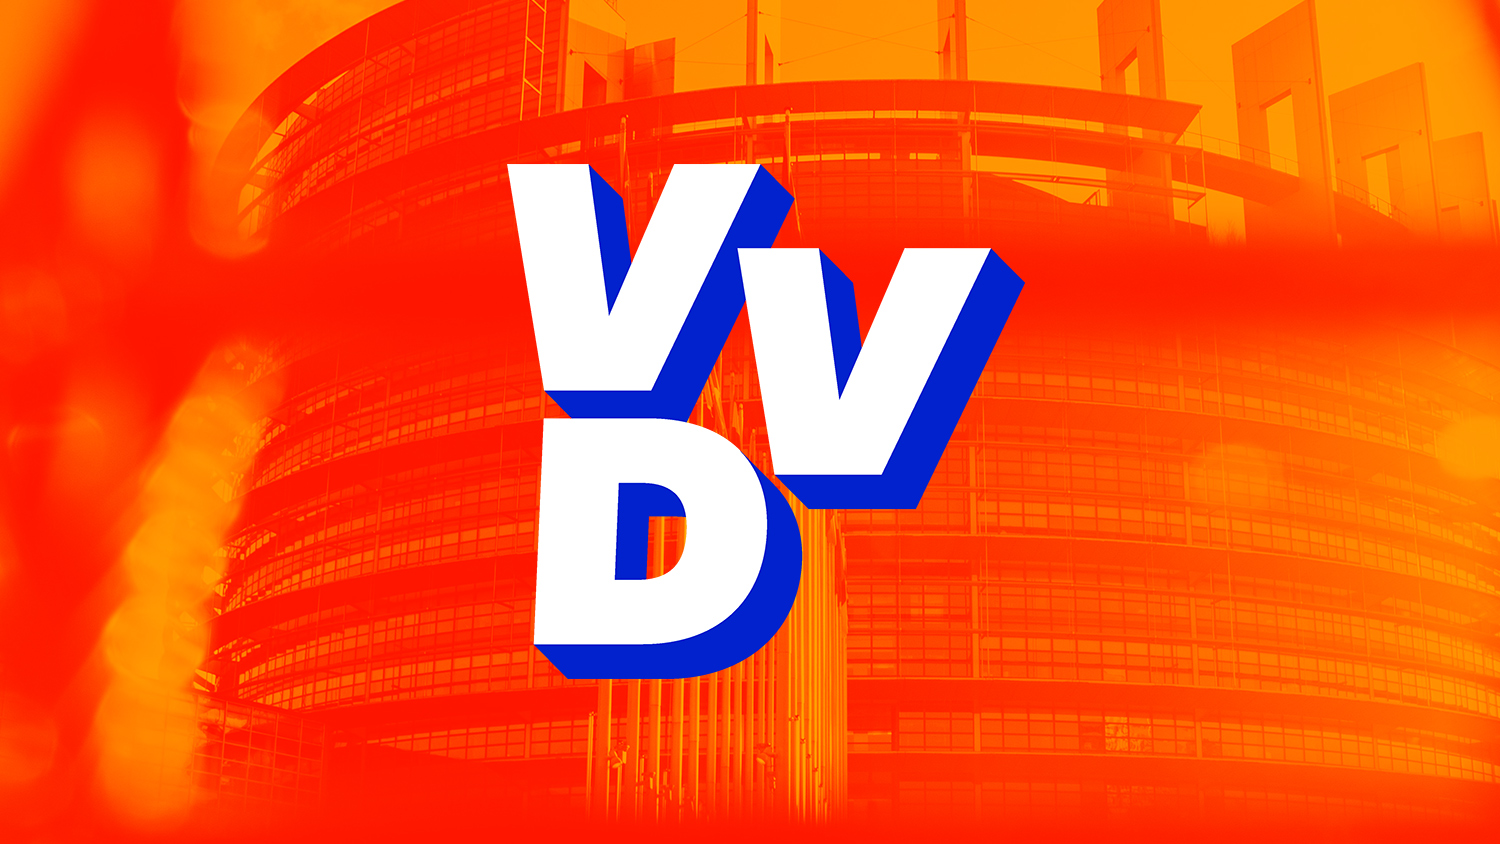 VVD logo Europees Parlement